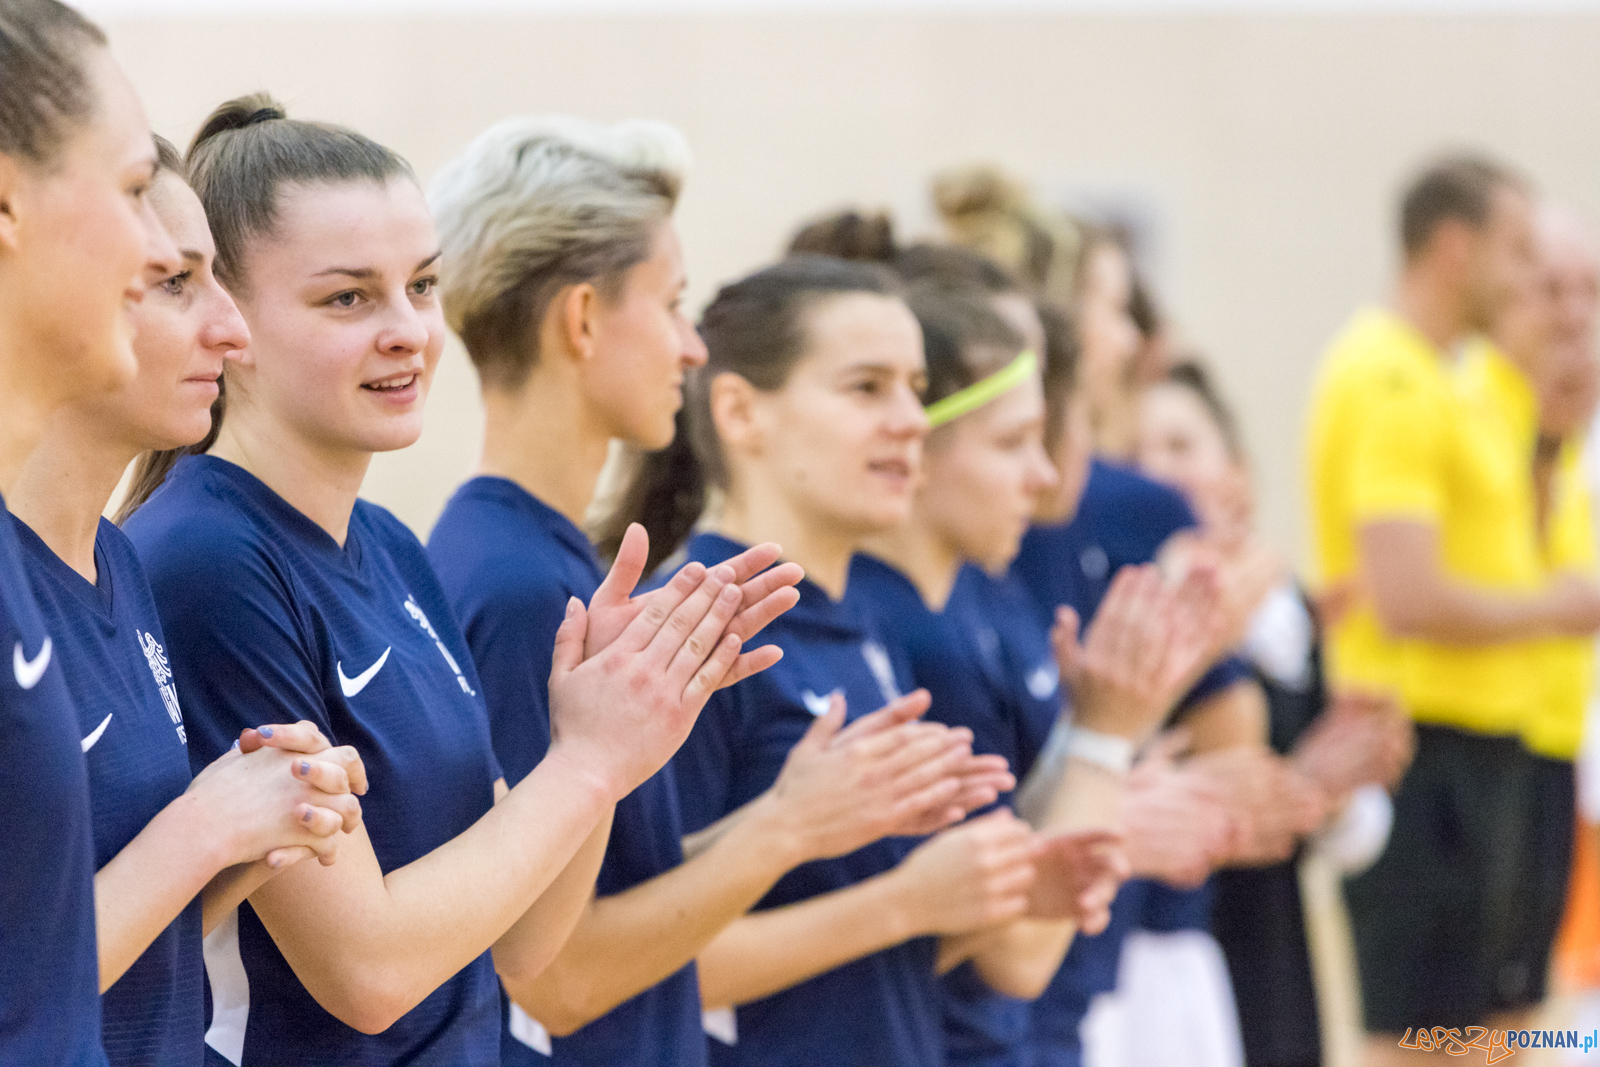 AZS UAM POZNAŃ Futsal Kobiet - BTS Rekord  Foto: lepszyPOZNAN.pl/Piotr Rychter